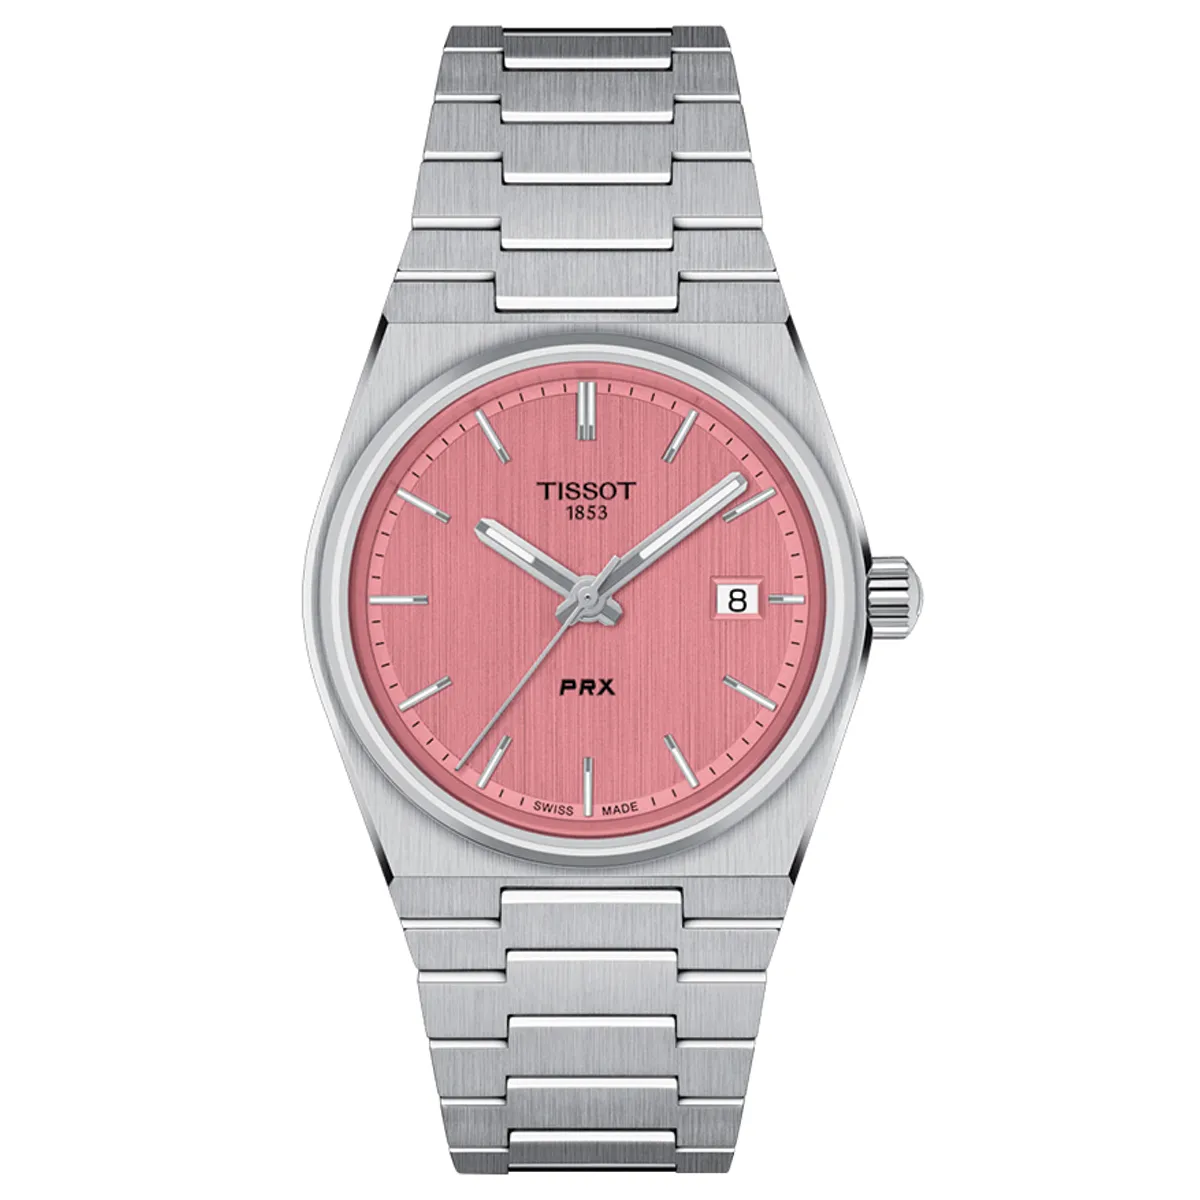 Đồng hồ Tissot PRX 35 MM T137.210.11.331.00 mặt số màu hồng. Dây đeo bằng thép. Thân vỏ bằng thép.